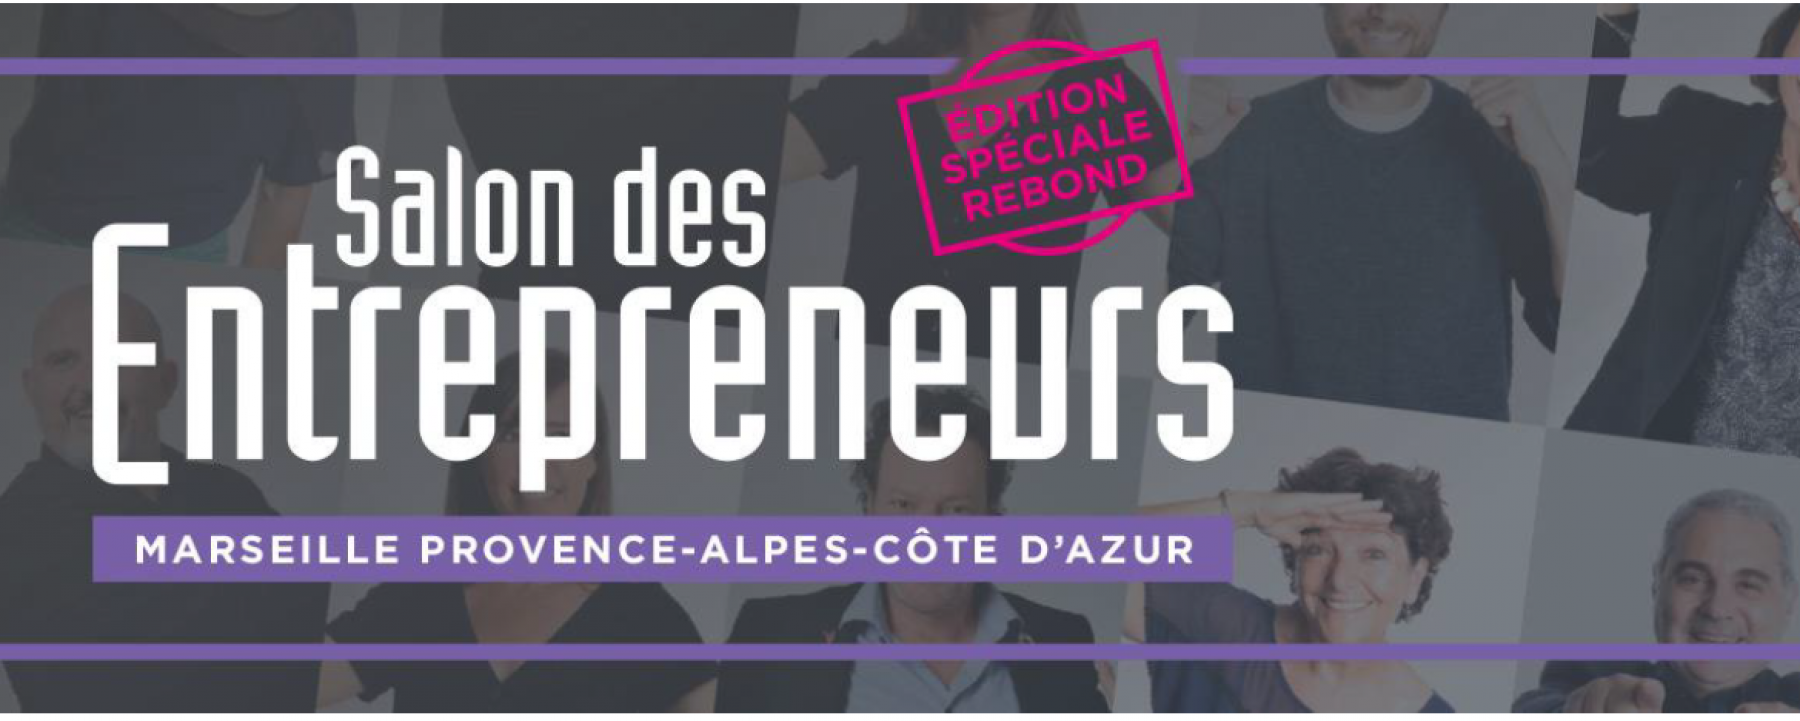 Salon des Entrepreneurs Marseille Provence Alpes Côte d’Azur, organisé par Les Echos Le Parisien Evénements le 5 novembre 